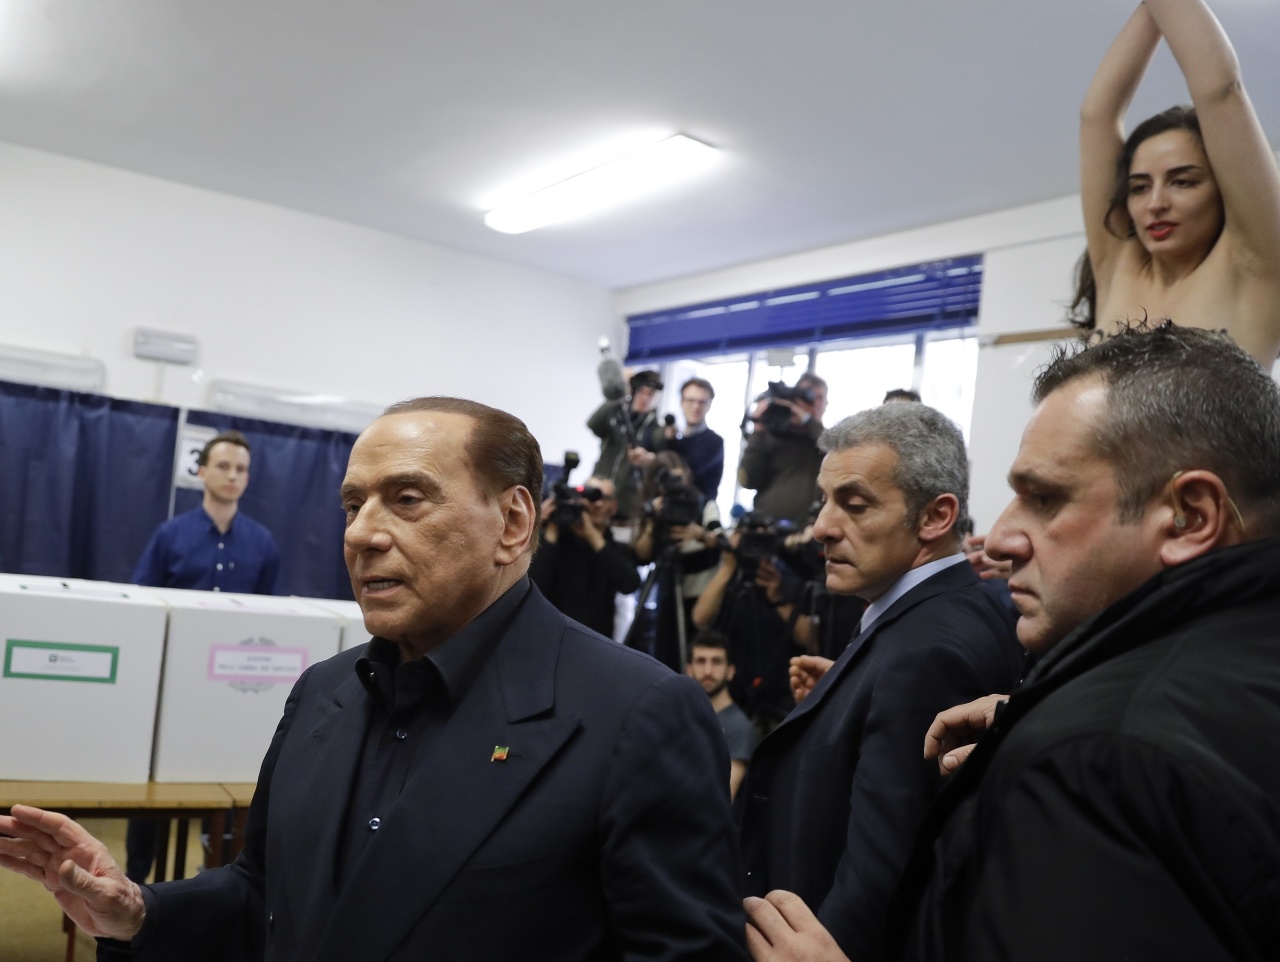 Polonahá aktivistka hnutia Femen narušila v nedeľu počas talianskych parlamentných volieb hlasovanie expremiérovi Silviovi Berlusconimu.